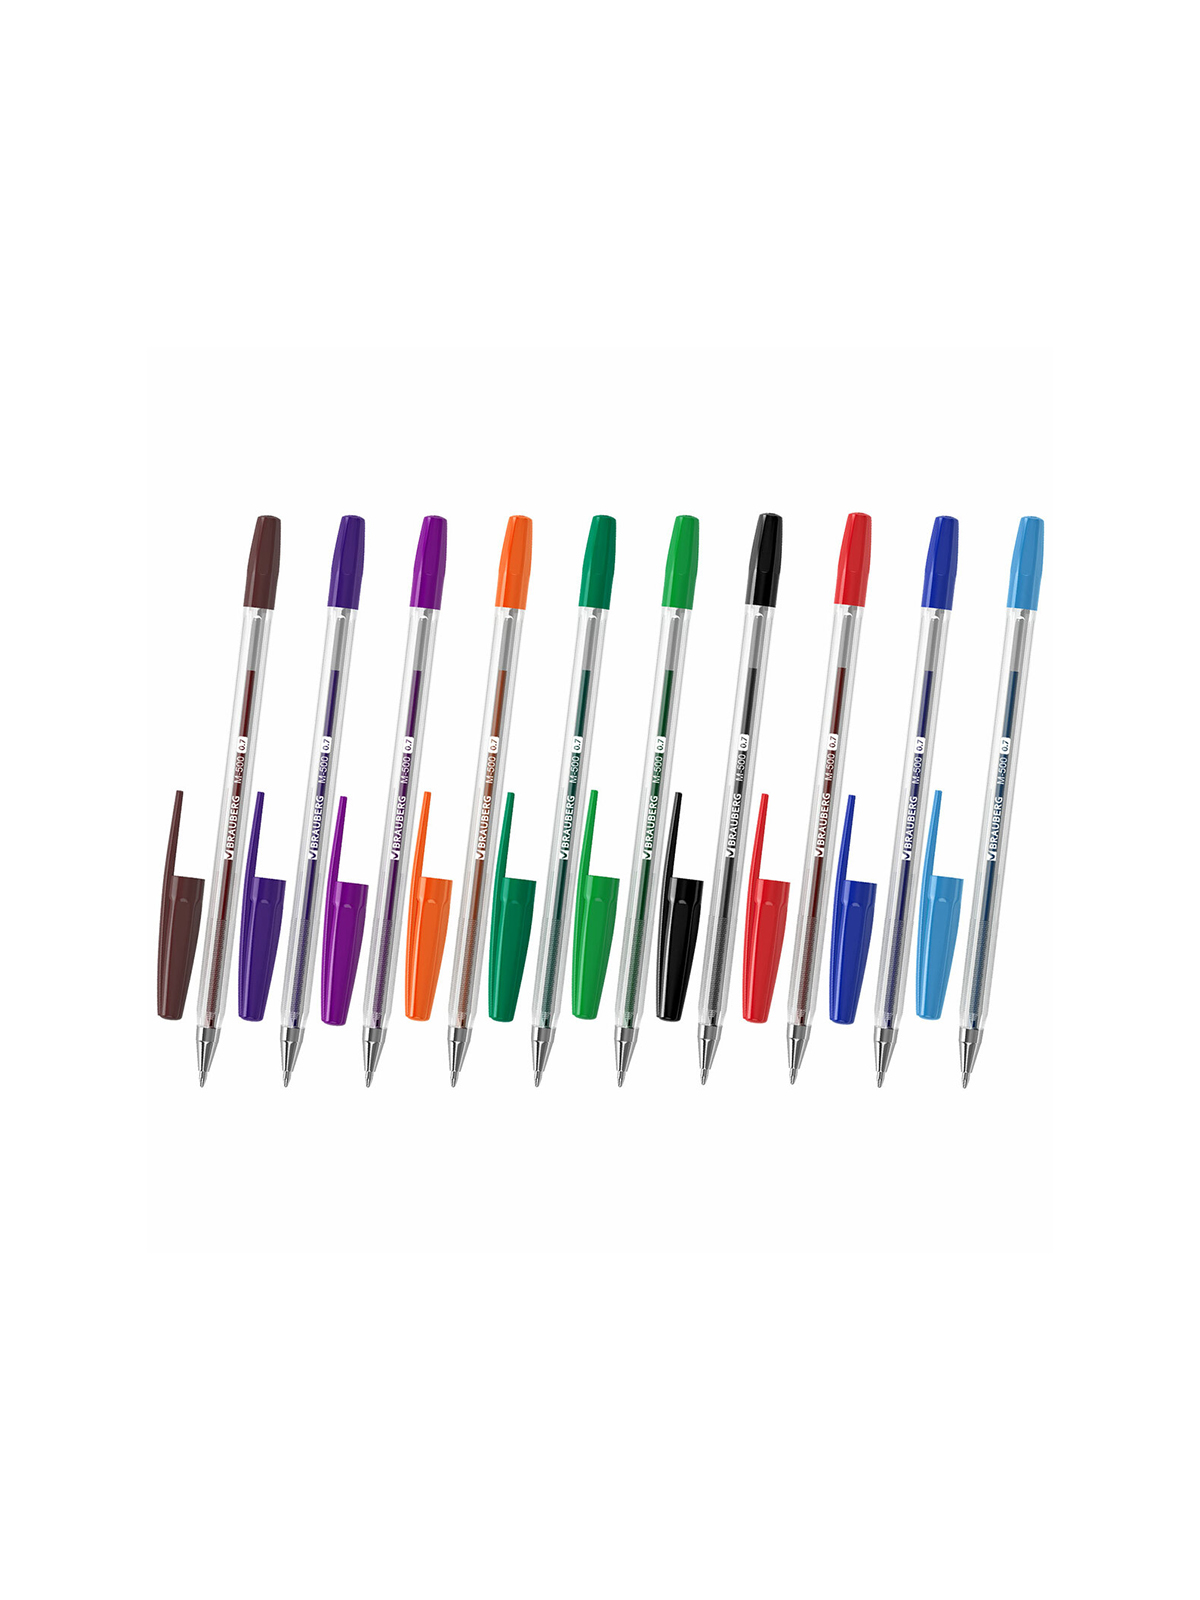 Ручки шариковые "BRAUBERG" M-500, цветные, 10шт, 10цв